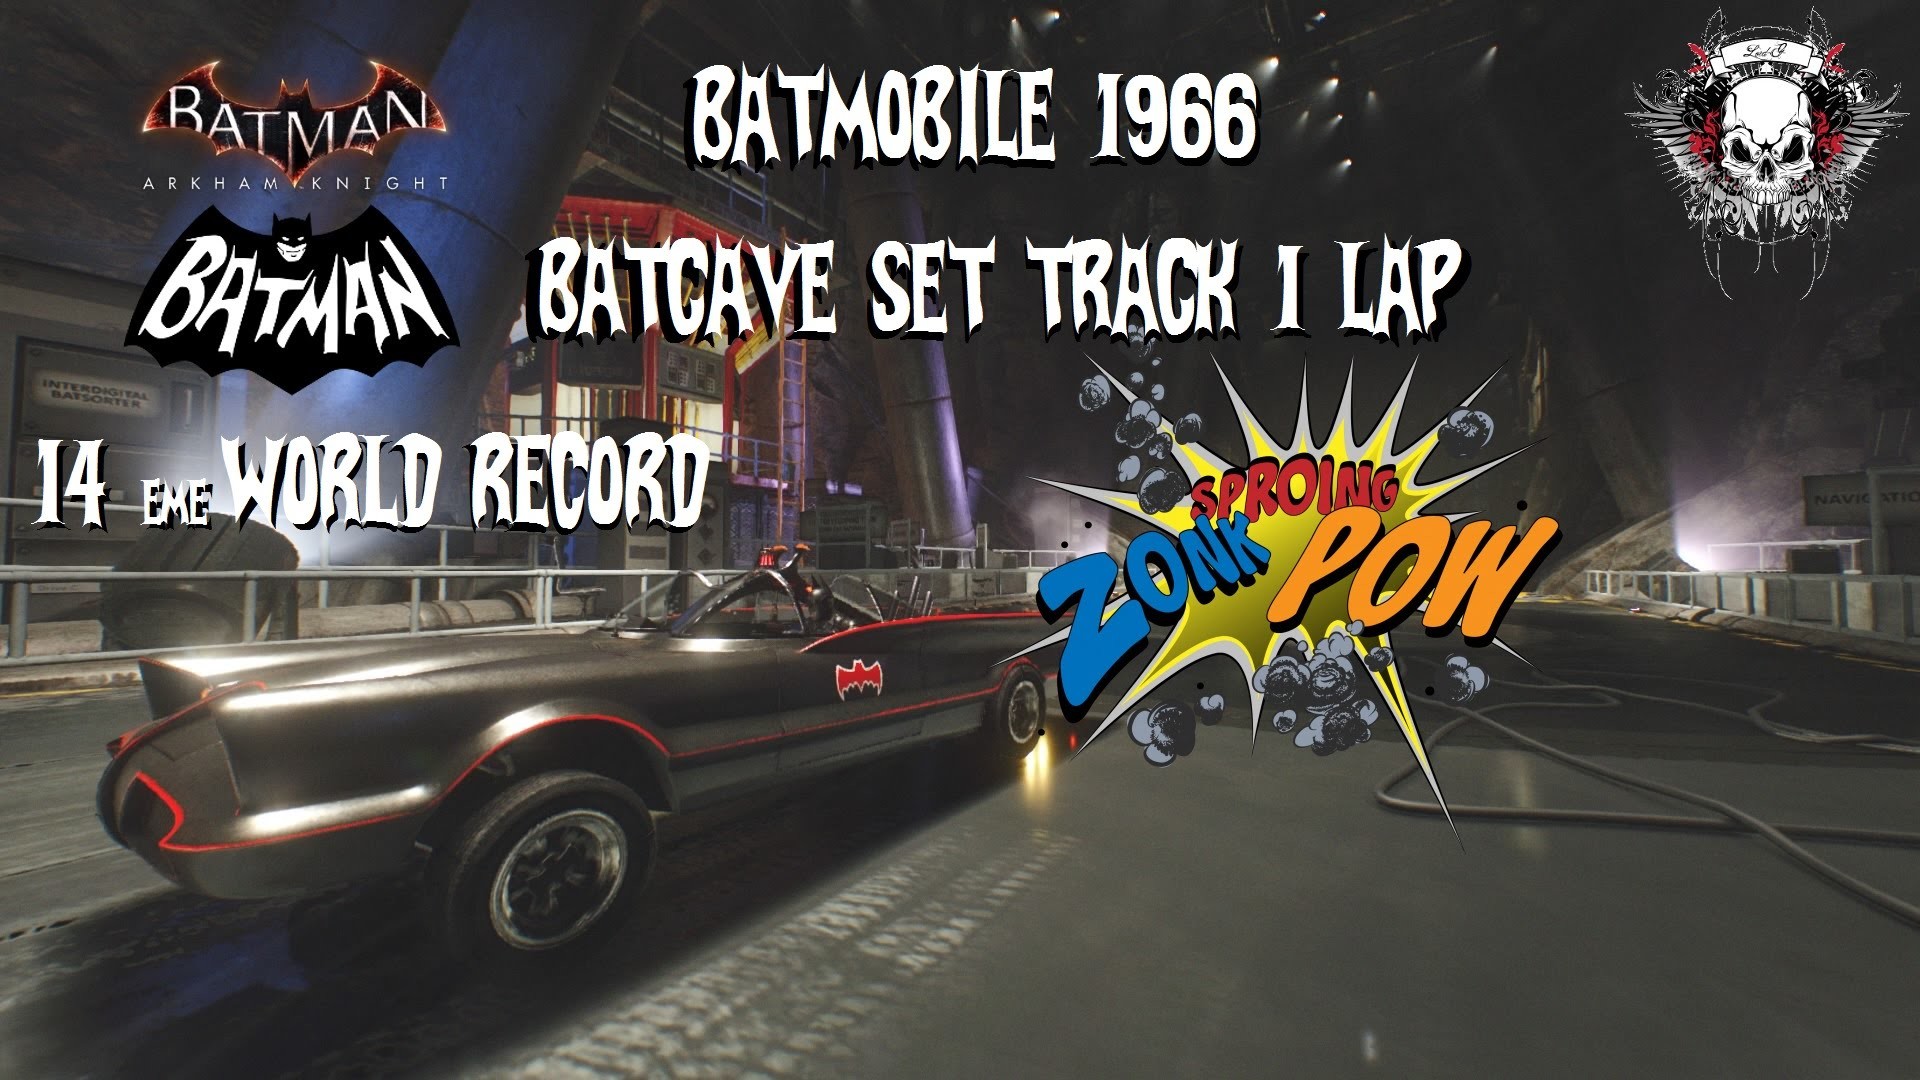 1920x1080 BATMANâ¢: ARKHAM KNIGHT Batmobile 1966 batcave set track 1lap